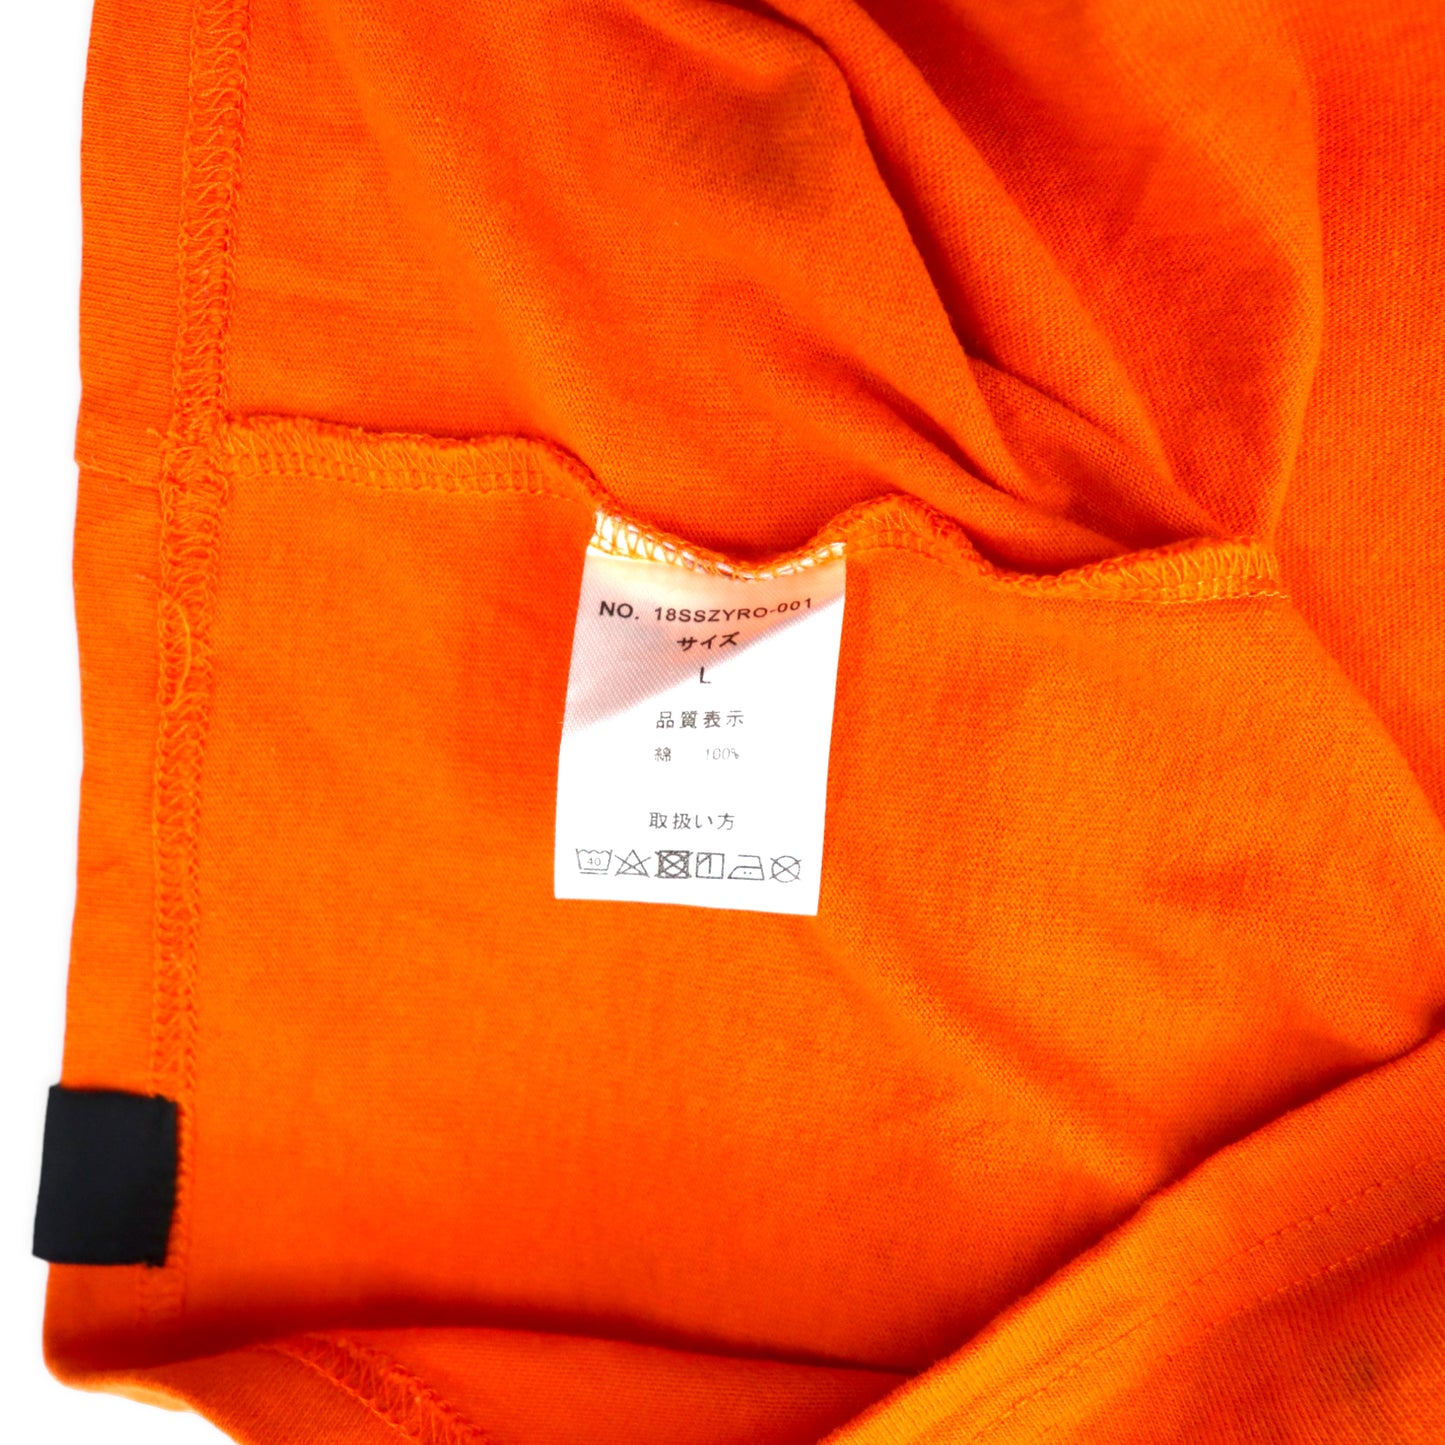 ZOO YORK ロゴプリントTシャツ L オレンジ コットン